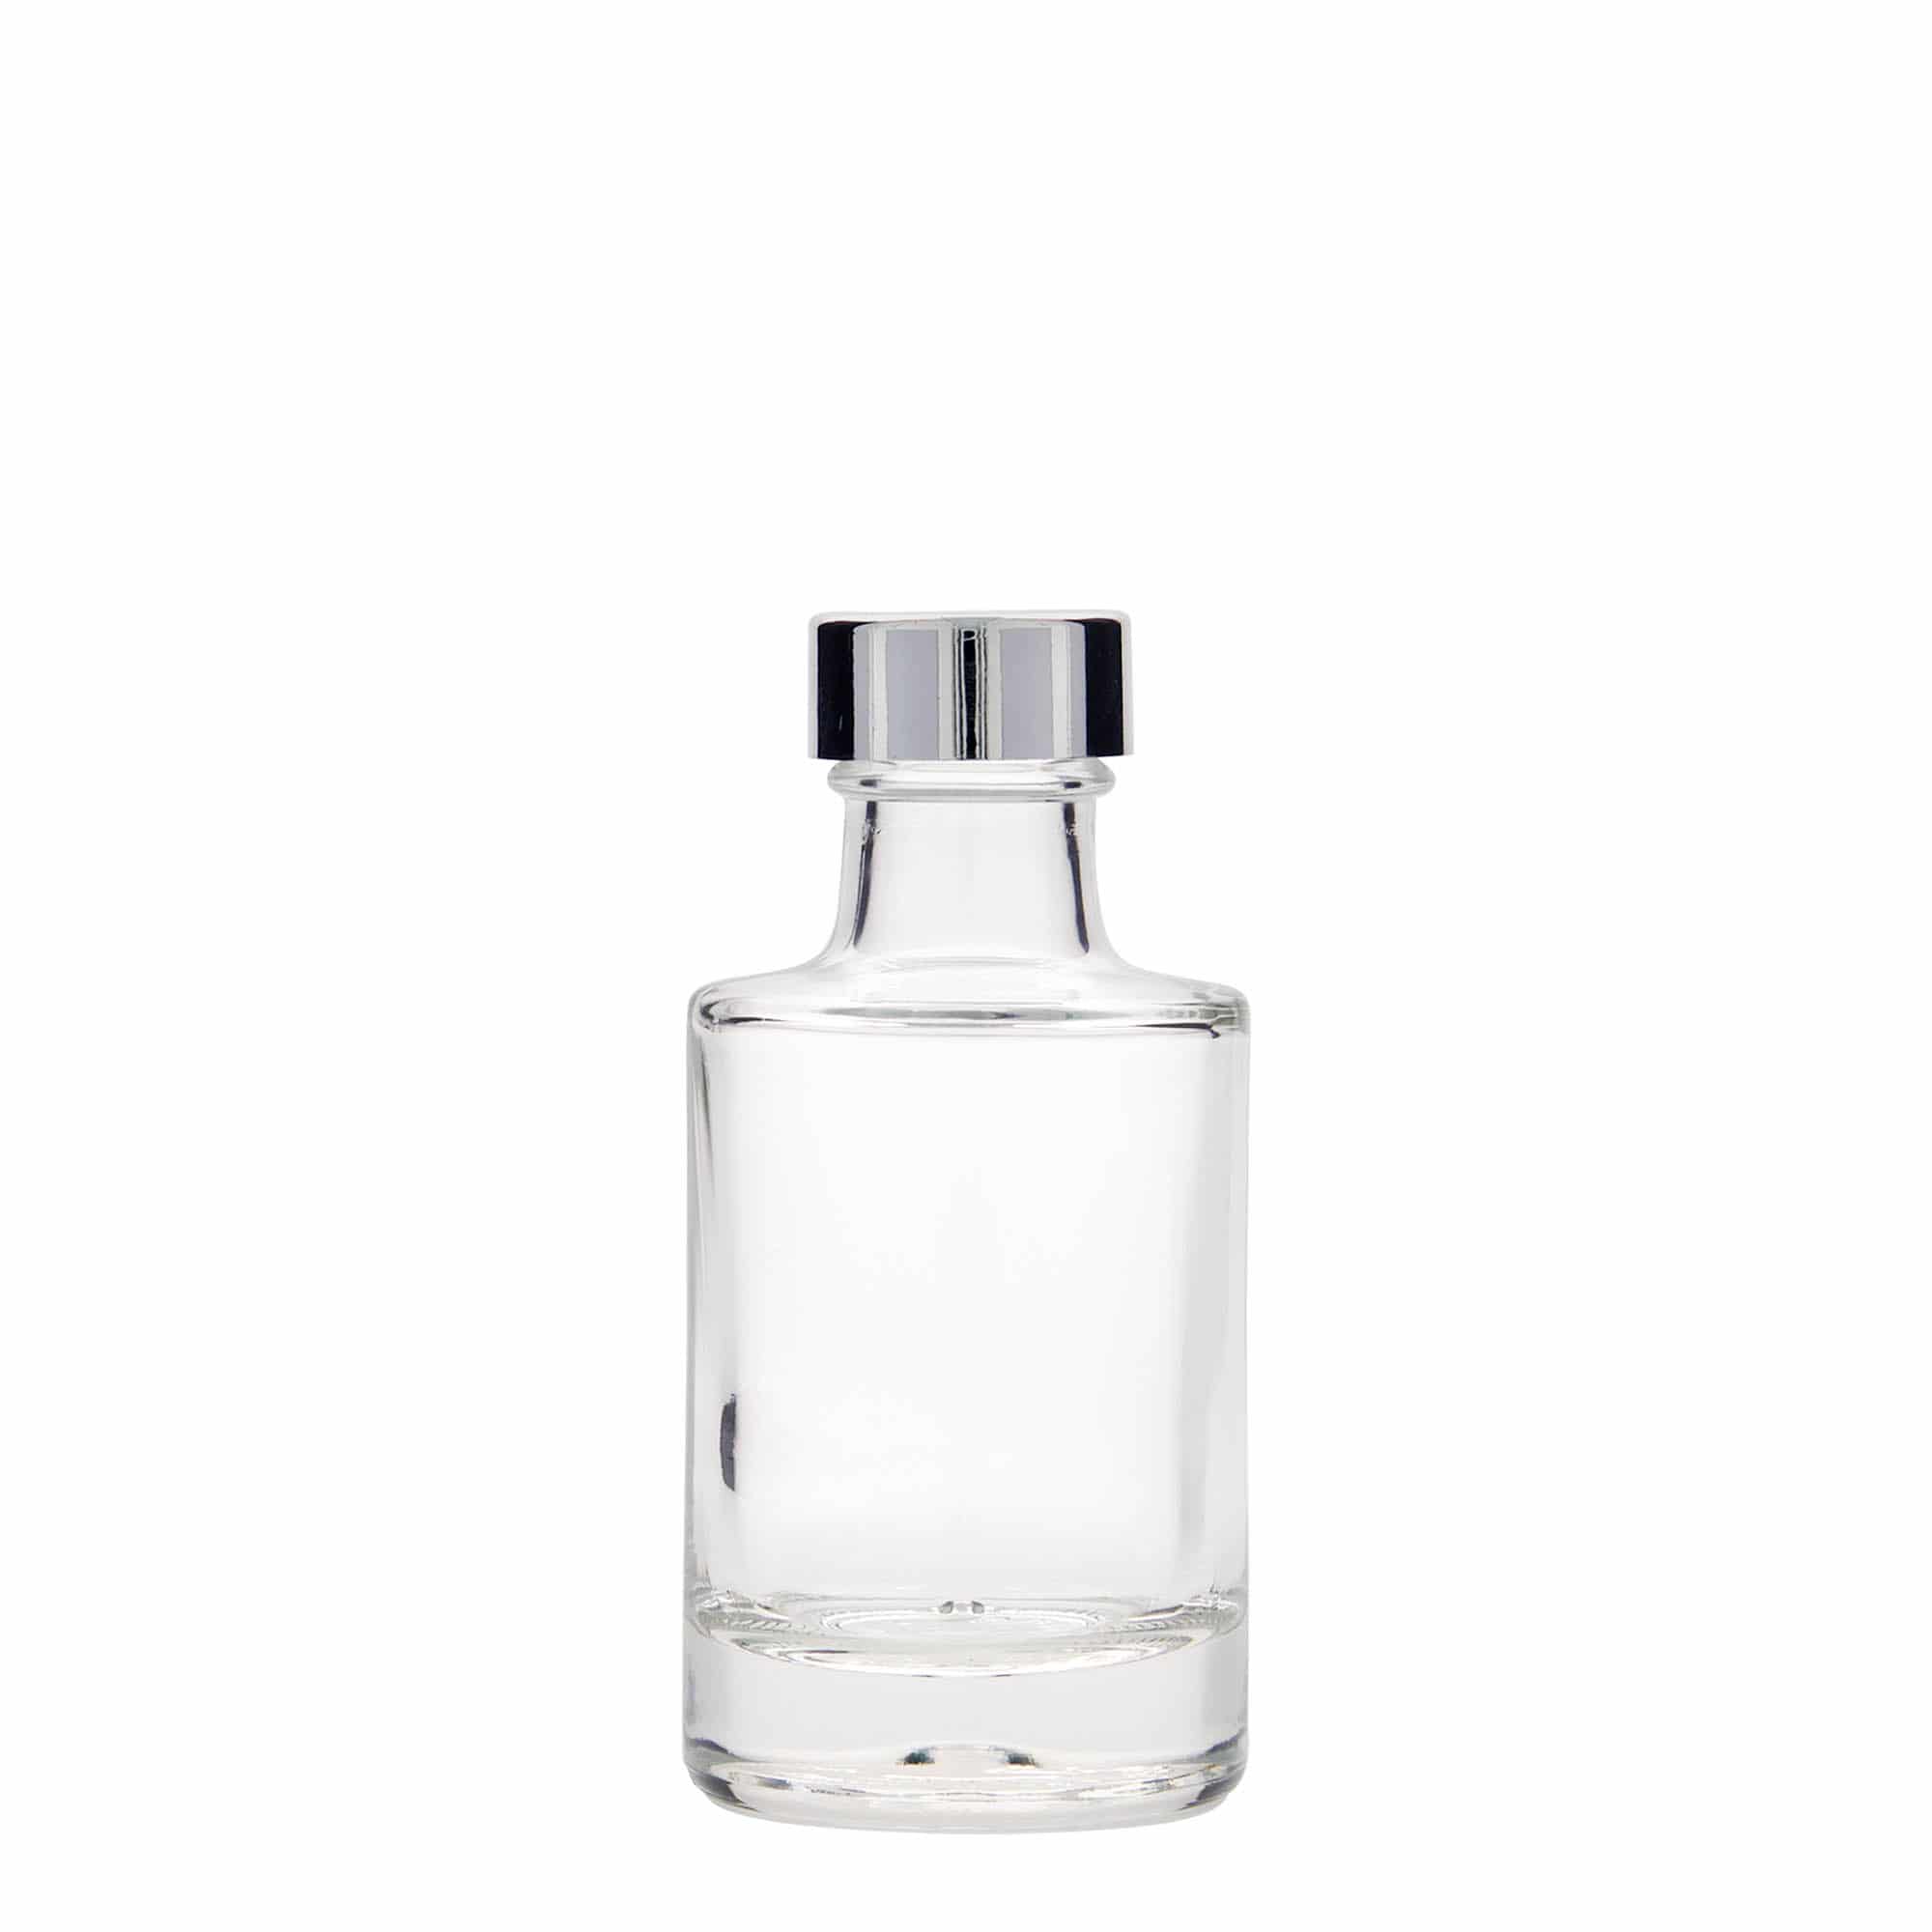 Skleněná lahev 100 ml 'Aventura', uzávěr: GPI 28